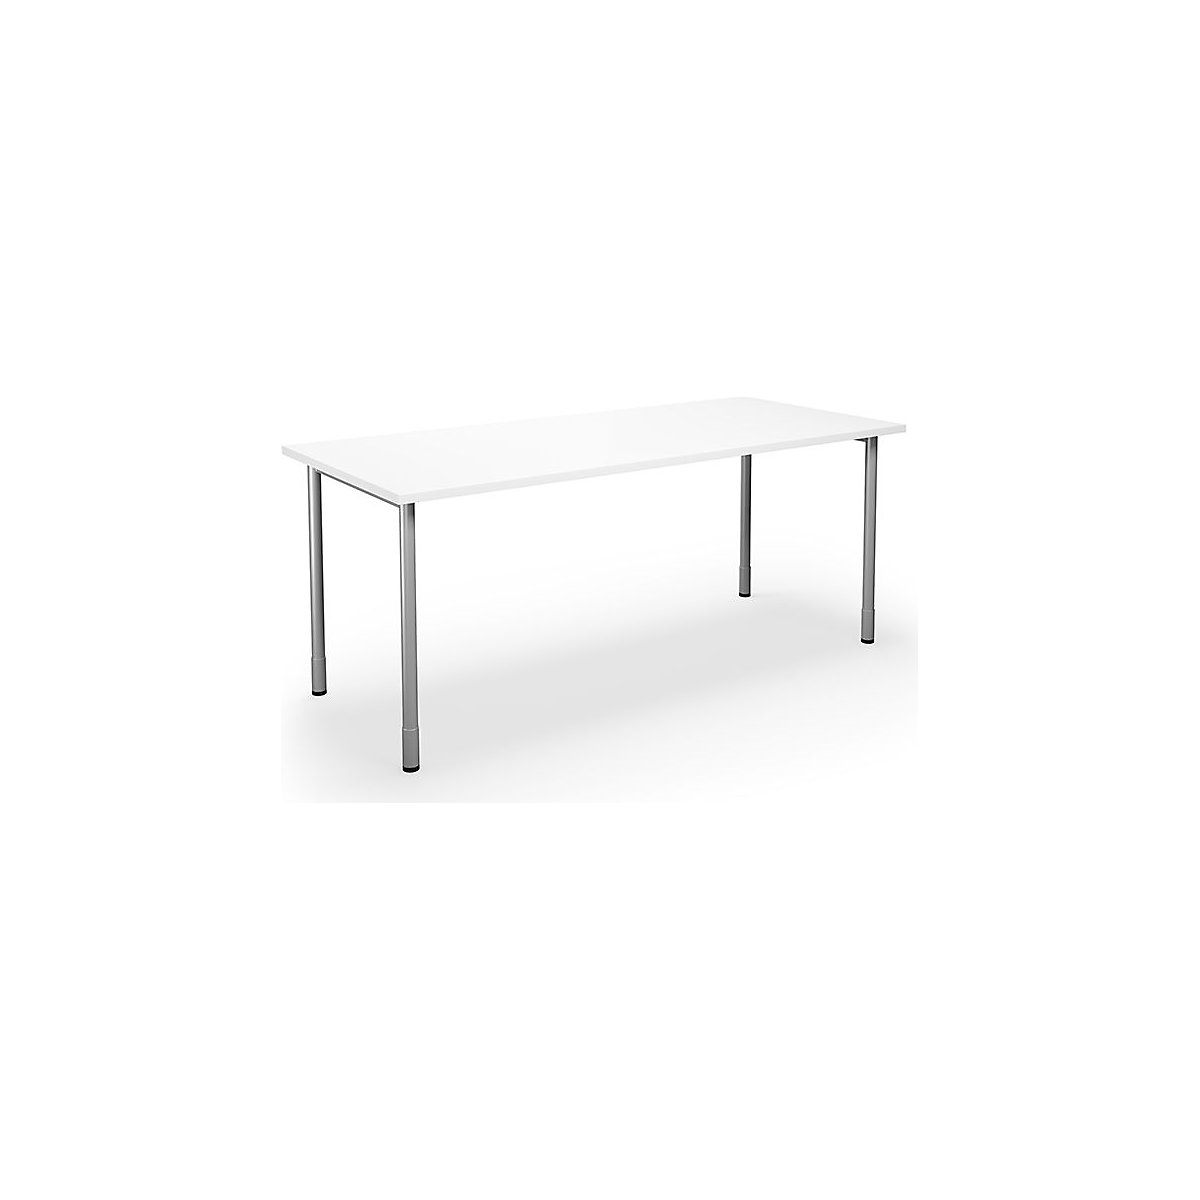 DUO-C multi-purpose desk, straight tabletop, WxD 1800 x 800 mm, white, silver-16